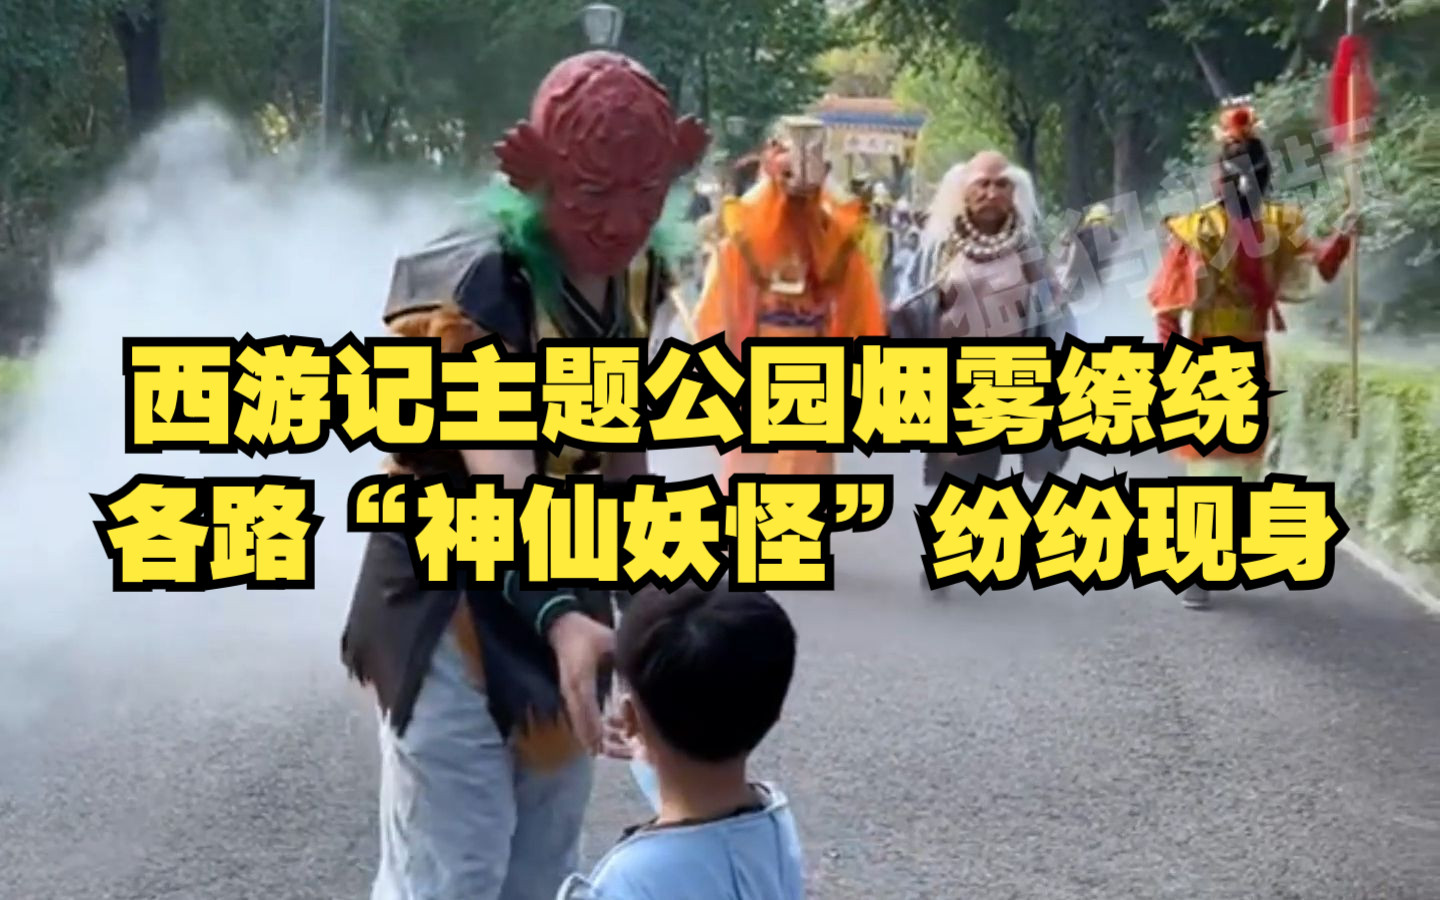 吉林西游记主题公园烟雾缭绕，各路“神仙妖怪”纷纷现身，“中国人自己的迪士尼乐园”。